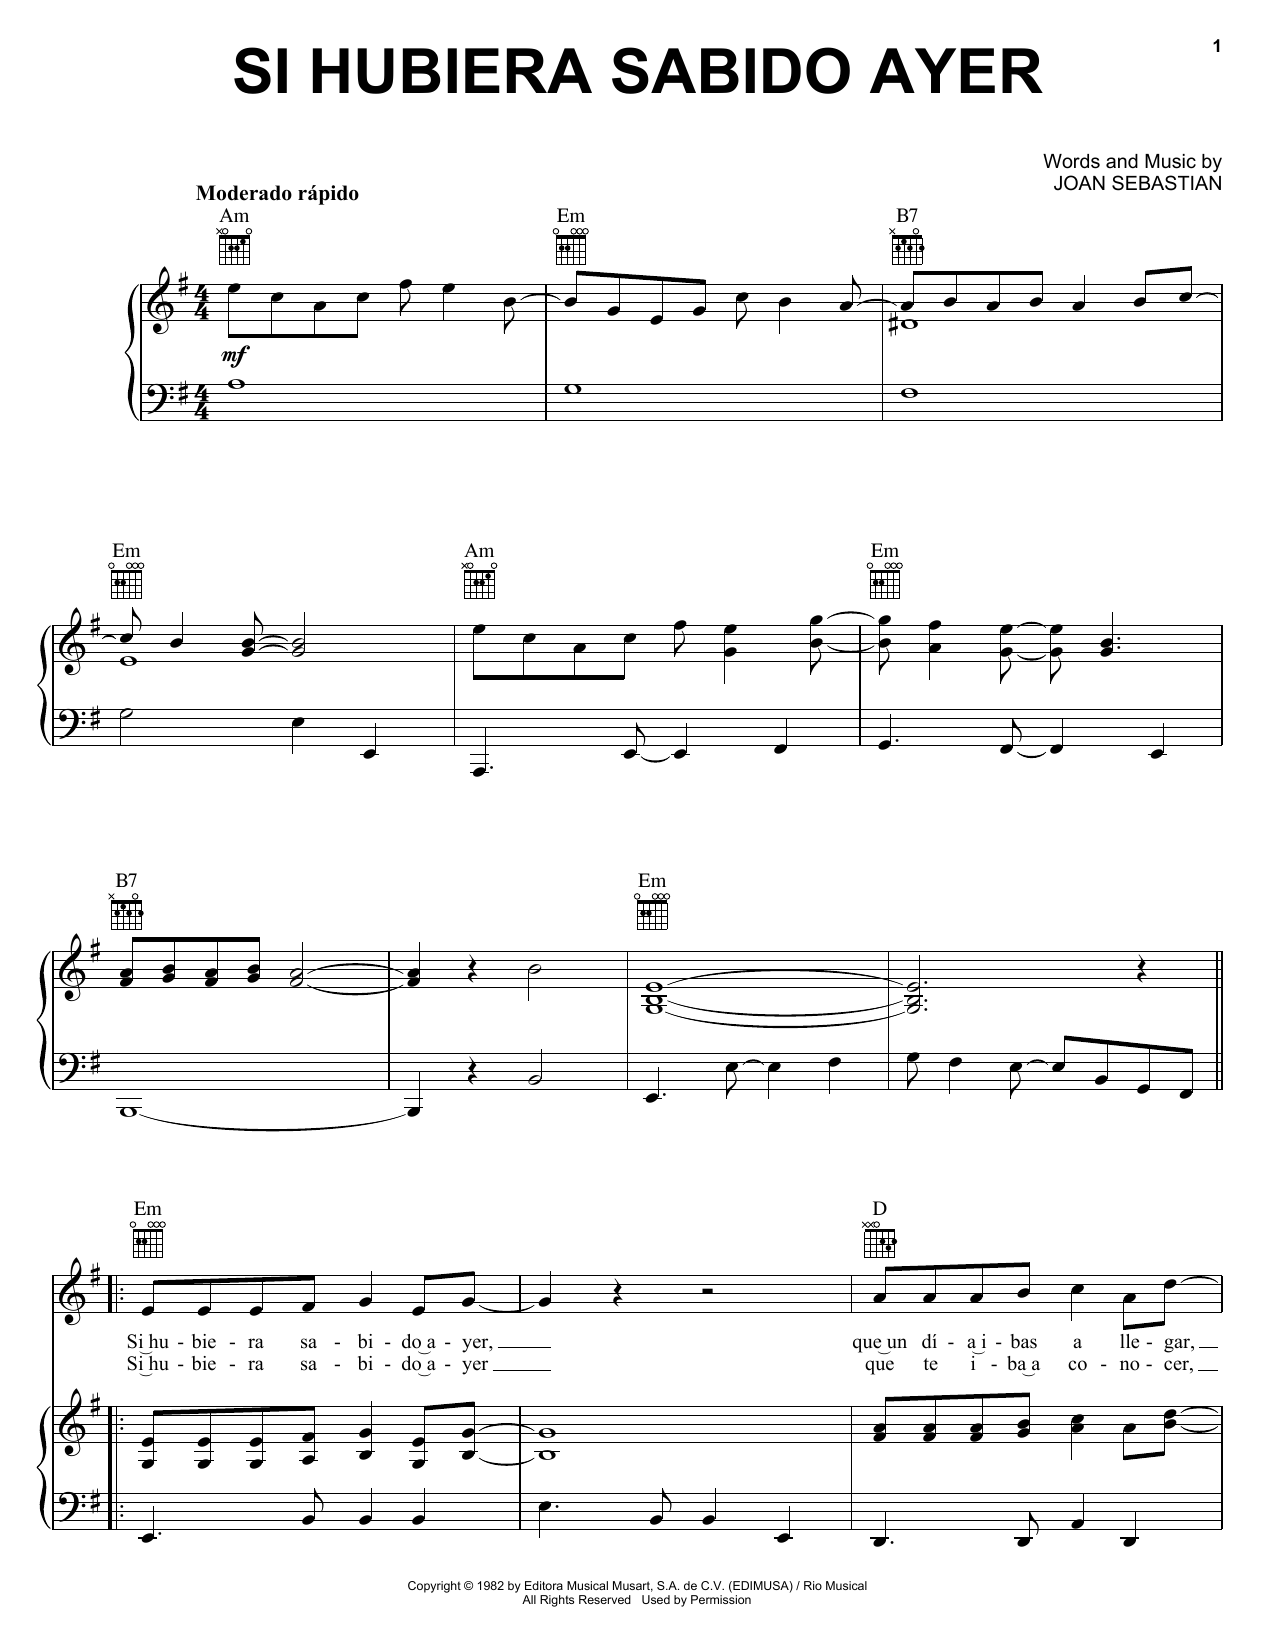 Joan Sebastian Si Hubiera Sabido Ayer Sheet Music Notes & Chords for Piano, Vocal & Guitar (Right-Hand Melody) - Download or Print PDF